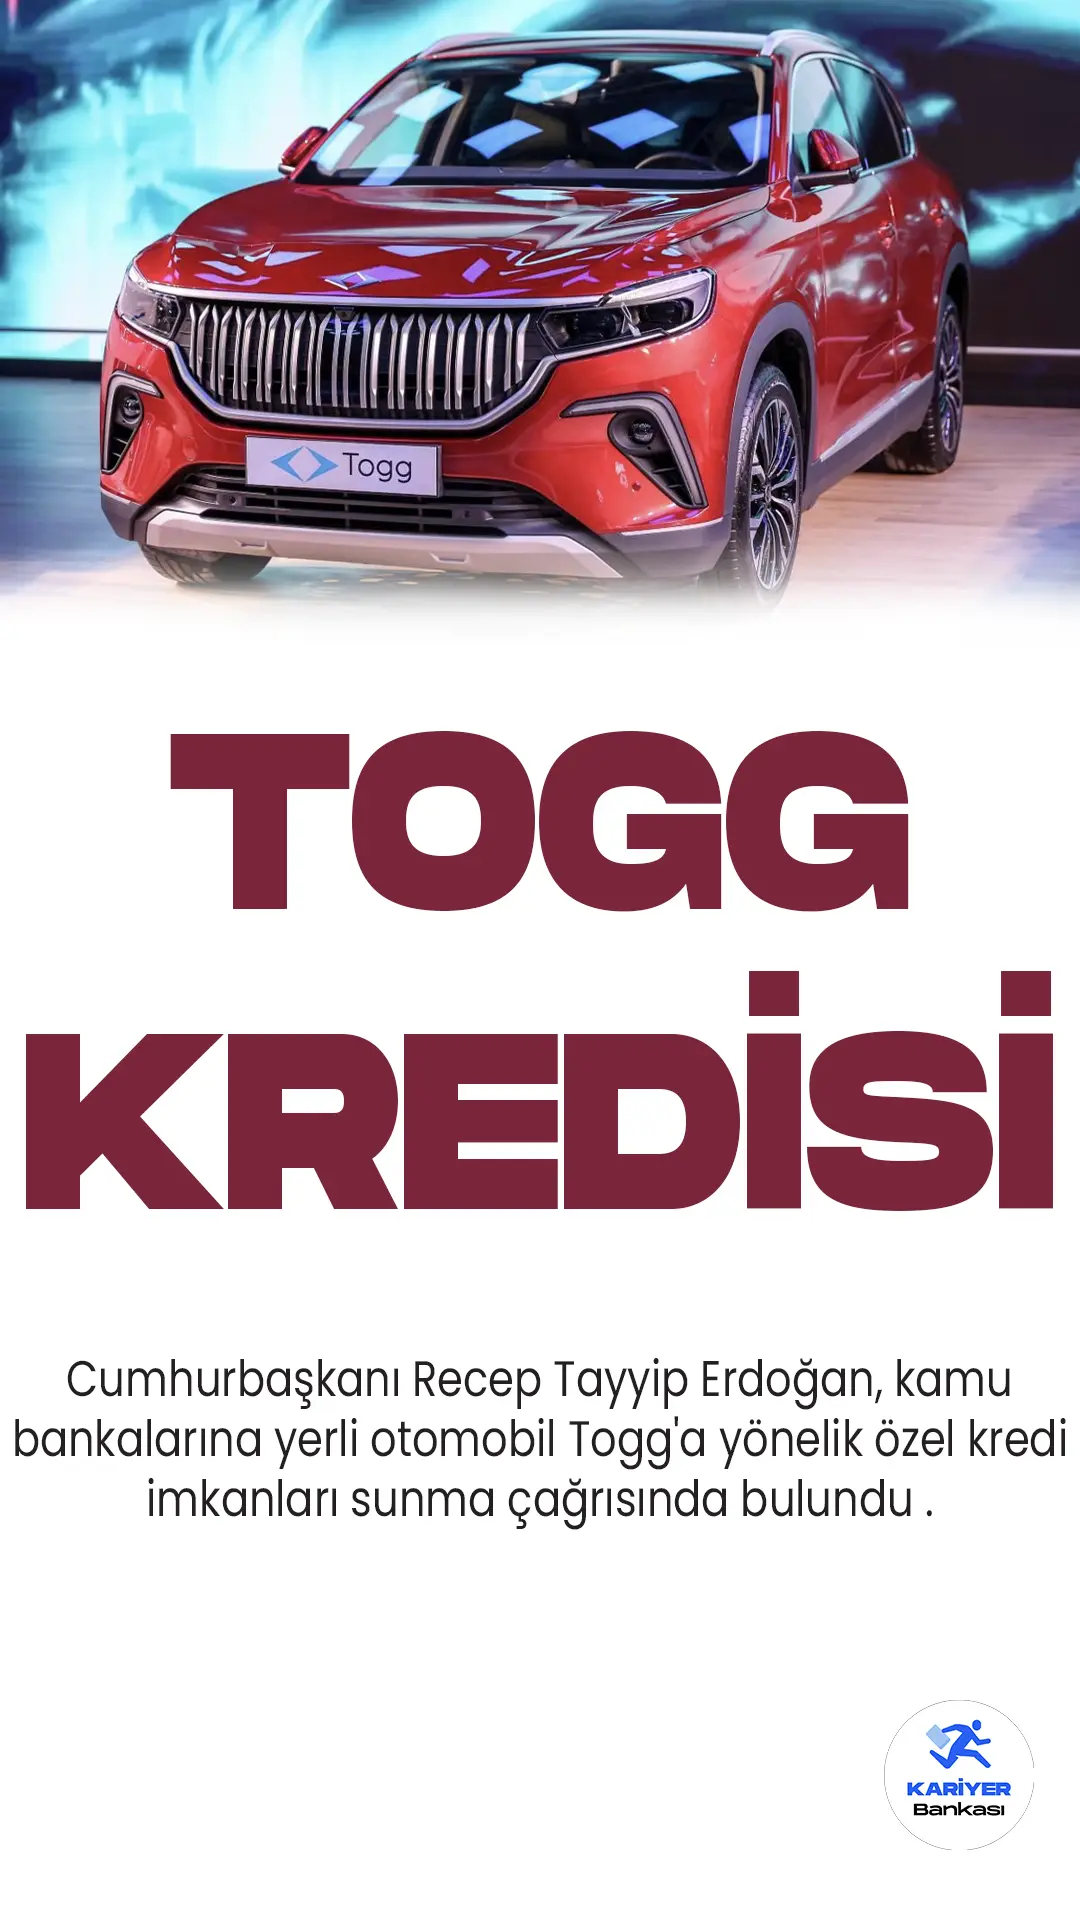 Cumhurbaşkanı Recep Tayyip Erdoğan, kamu bankalarına yerli otomobil Togg'a yönelik özel kredi imkanları sunma çağrısında bulundu.